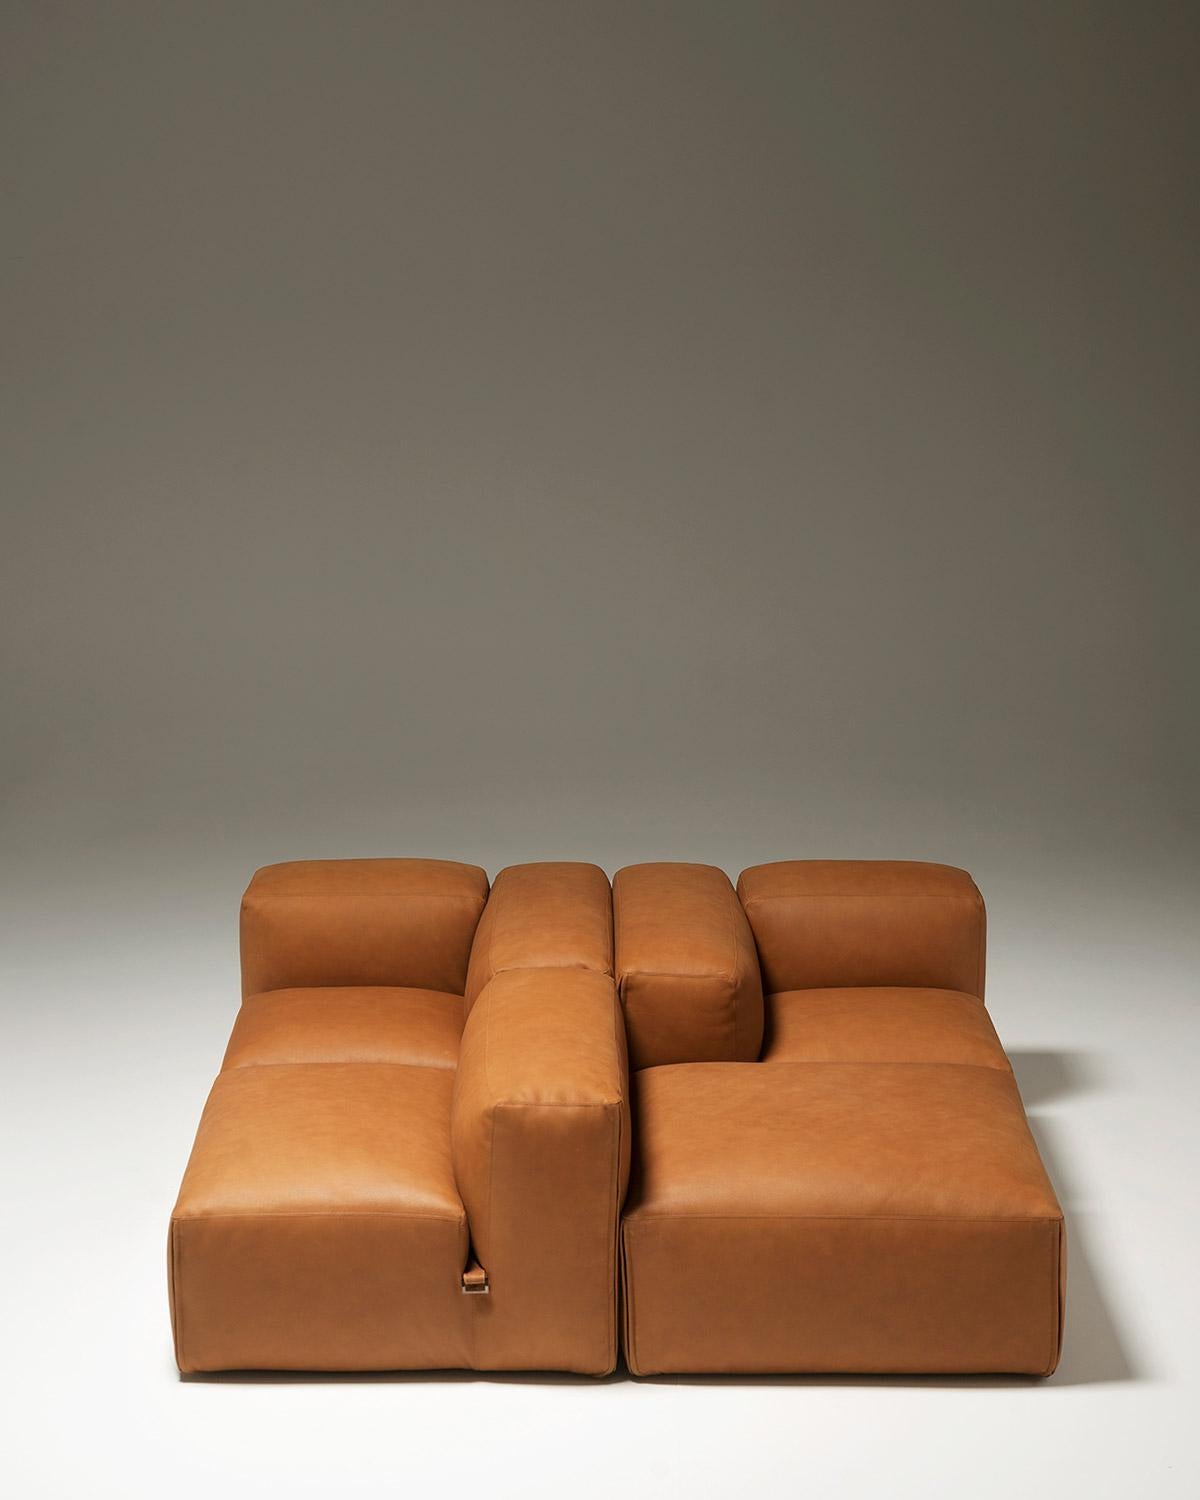 Customizable Tacchini Le Mura Modular Sofa Designed by Mario Bellini In New Condition For Sale In New York, NY